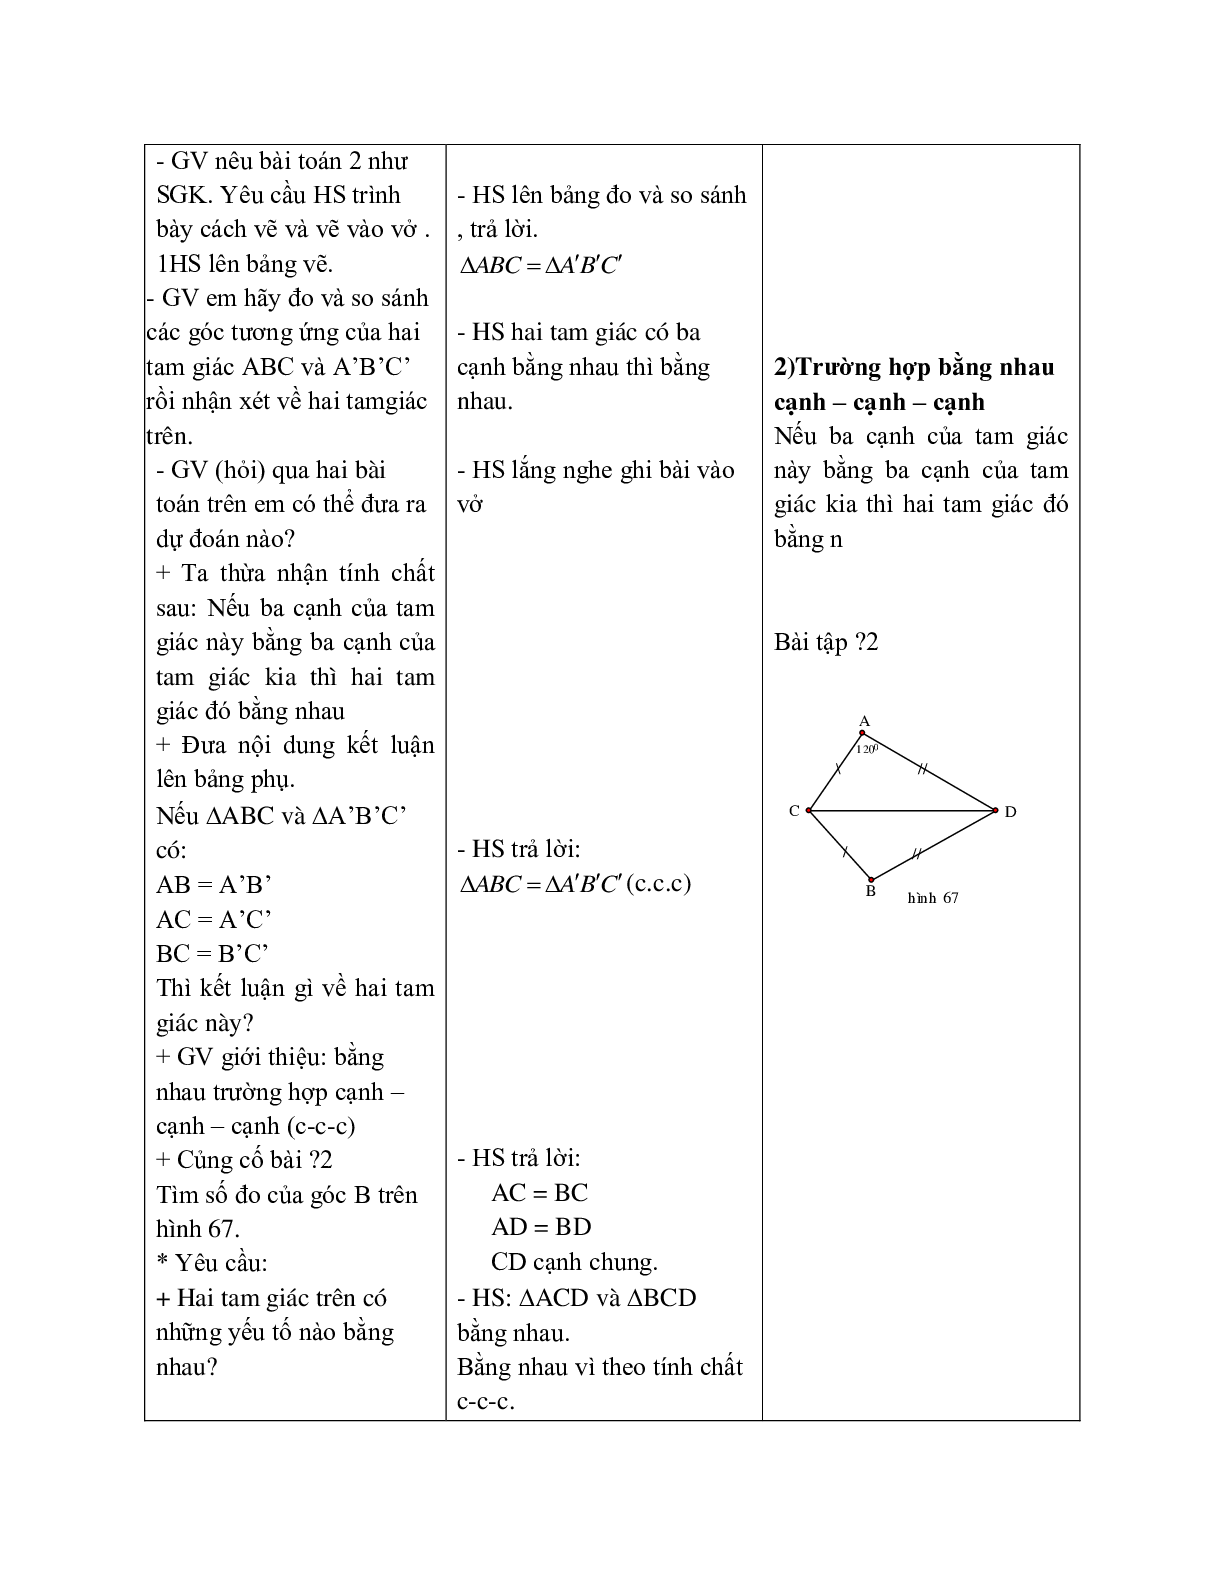 Giáo án Toán học 7 bài 3: Trường hợp bằng nhau thứ nhất của tam giác (c.c.c) hay nhất (trang 3)